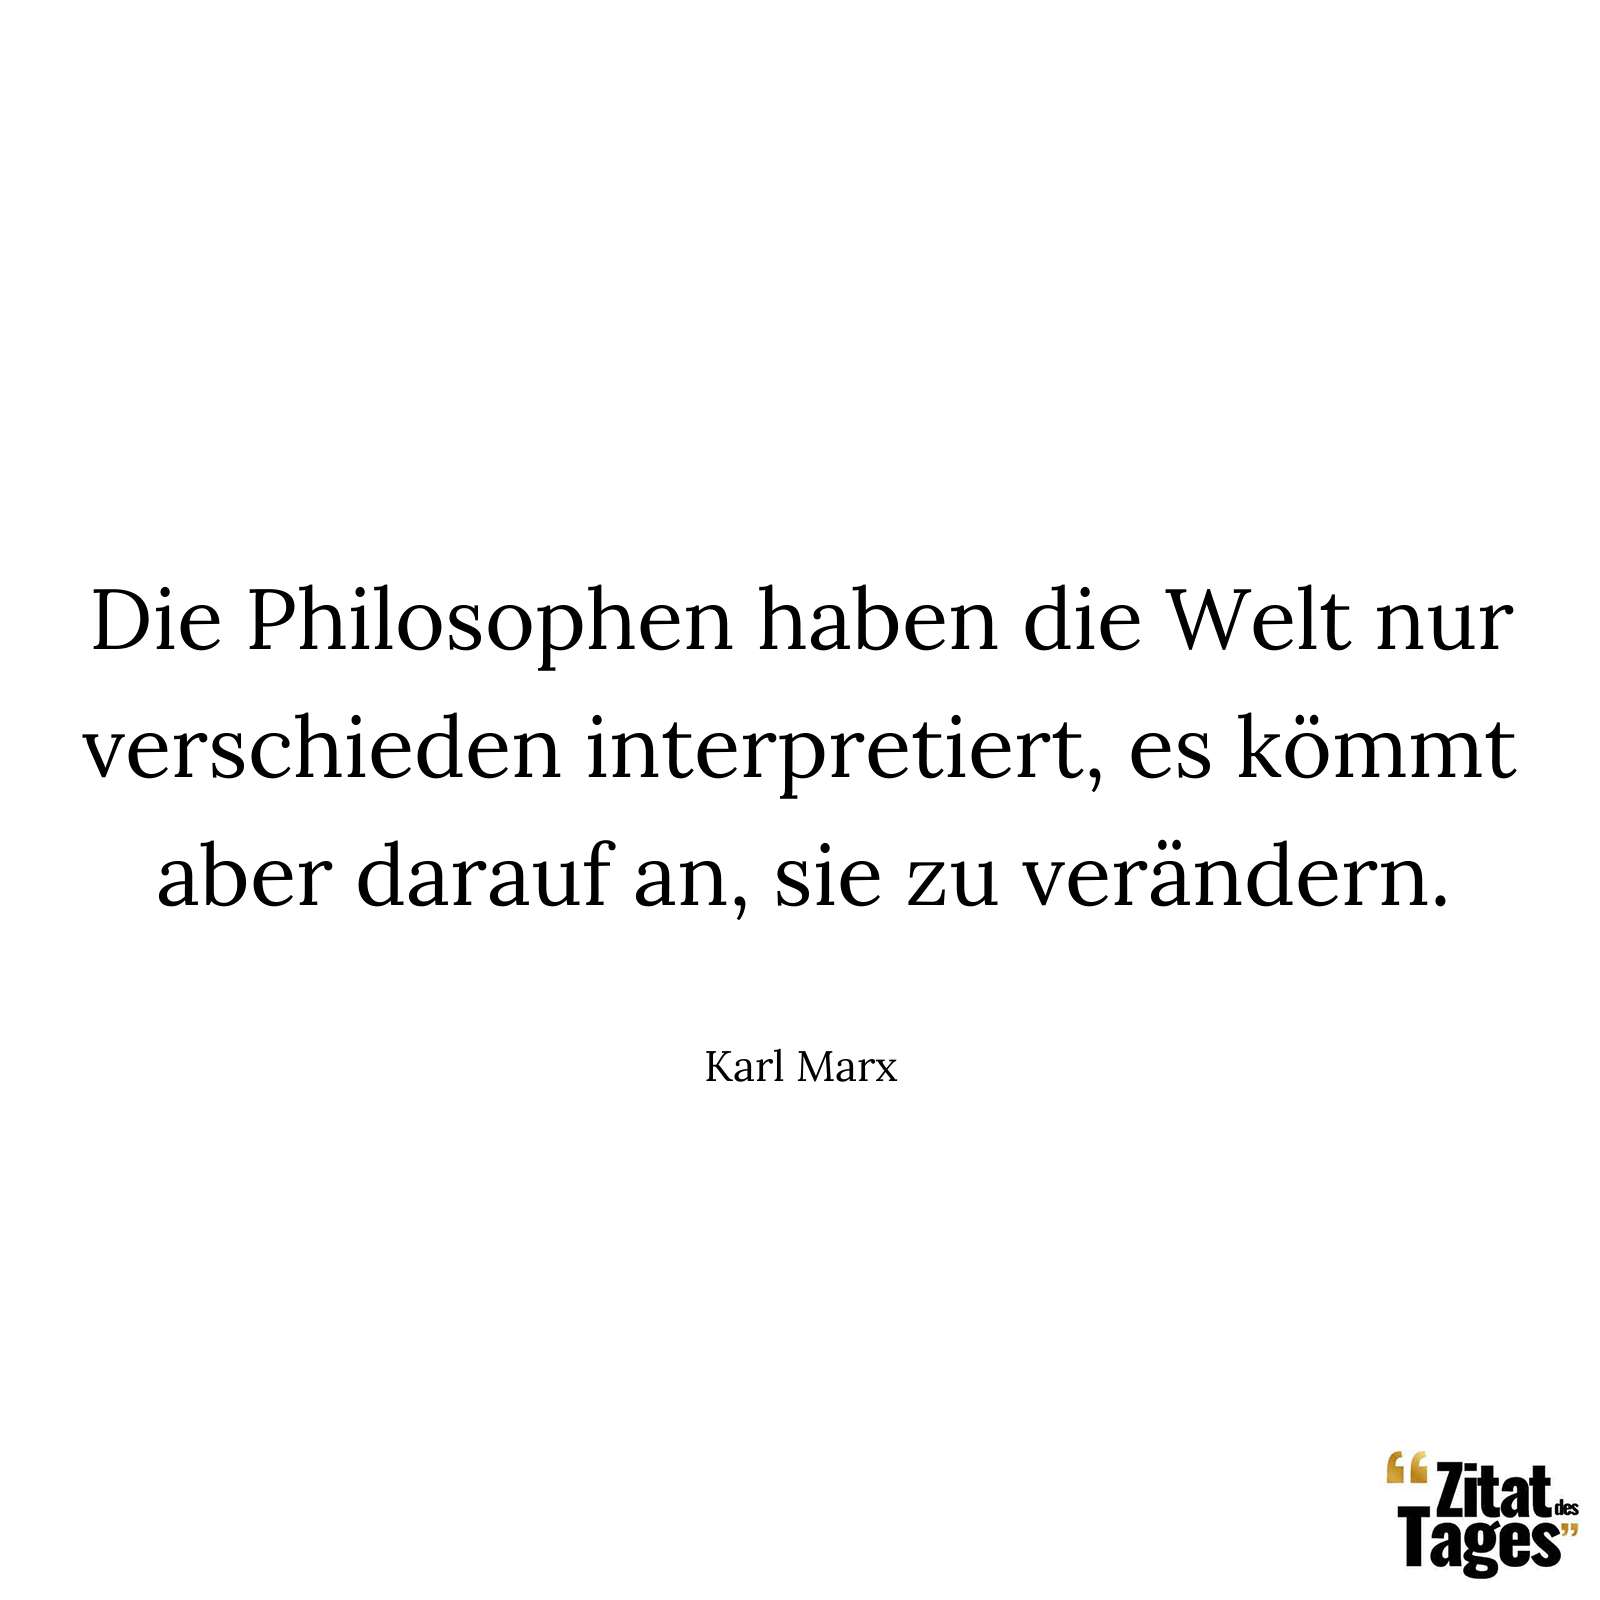 Die Philosophen haben die Welt nur verschieden interpretiert, es kömmt aber darauf an, sie zu verändern. - Karl Marx